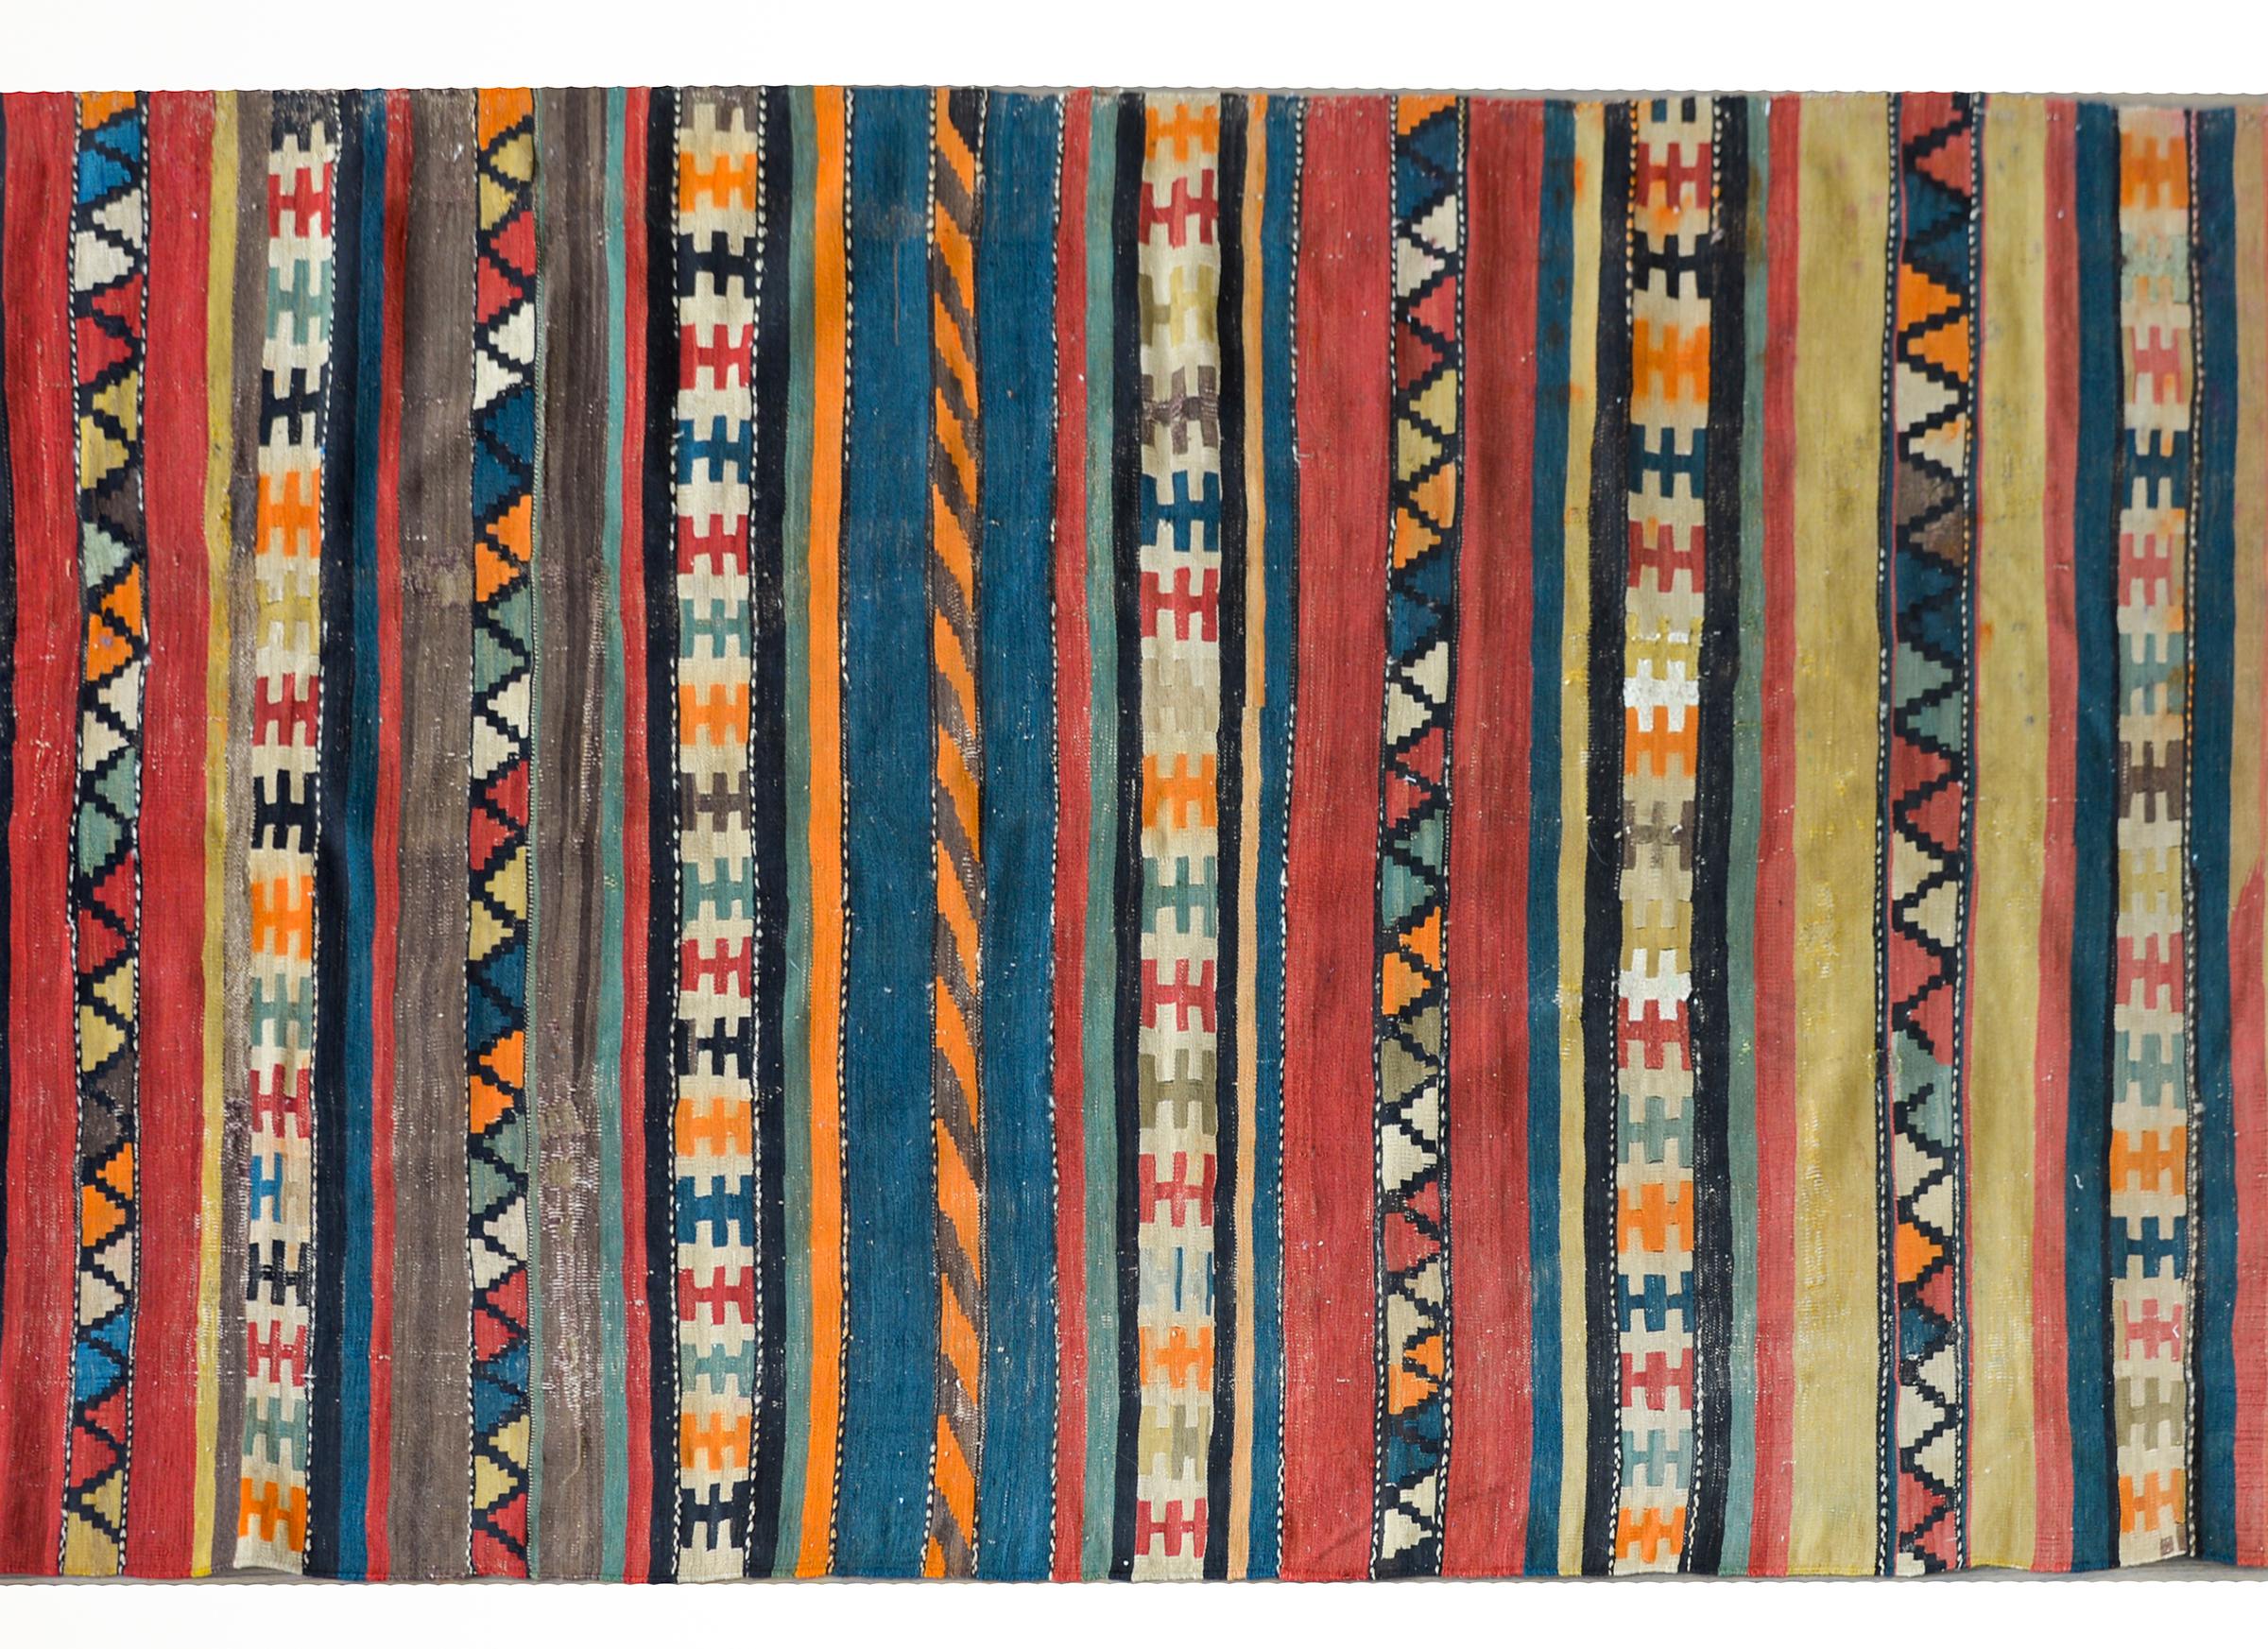 Un magnifique kilim persan du début du 20e siècle, avec une myriade de rayures multicolores, certaines unies, d'autres avec des motifs géométriques, et toutes tissées dans des couleurs vives et brillantes.